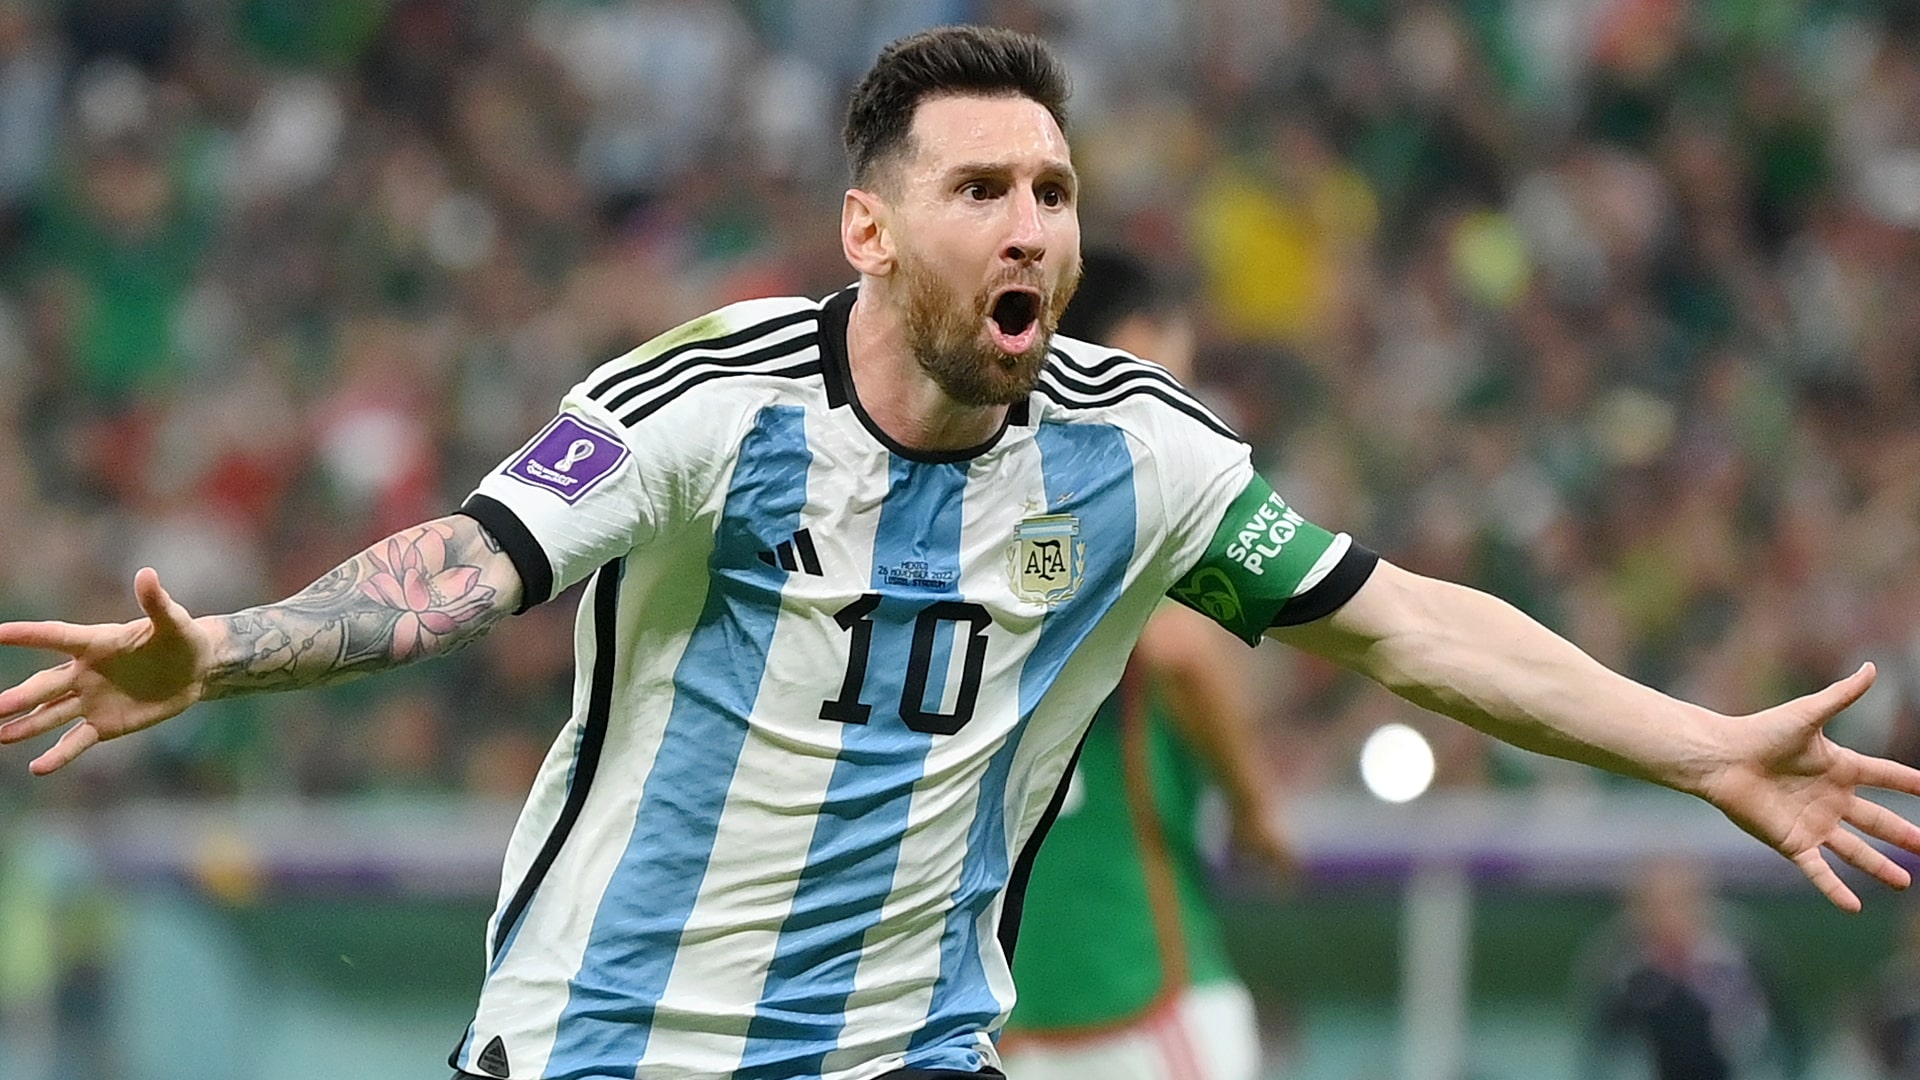 Le merveilleux match de Messi contre l&rsquo;Argentine établit le record d&rsquo;audience à la télévision.  34% part